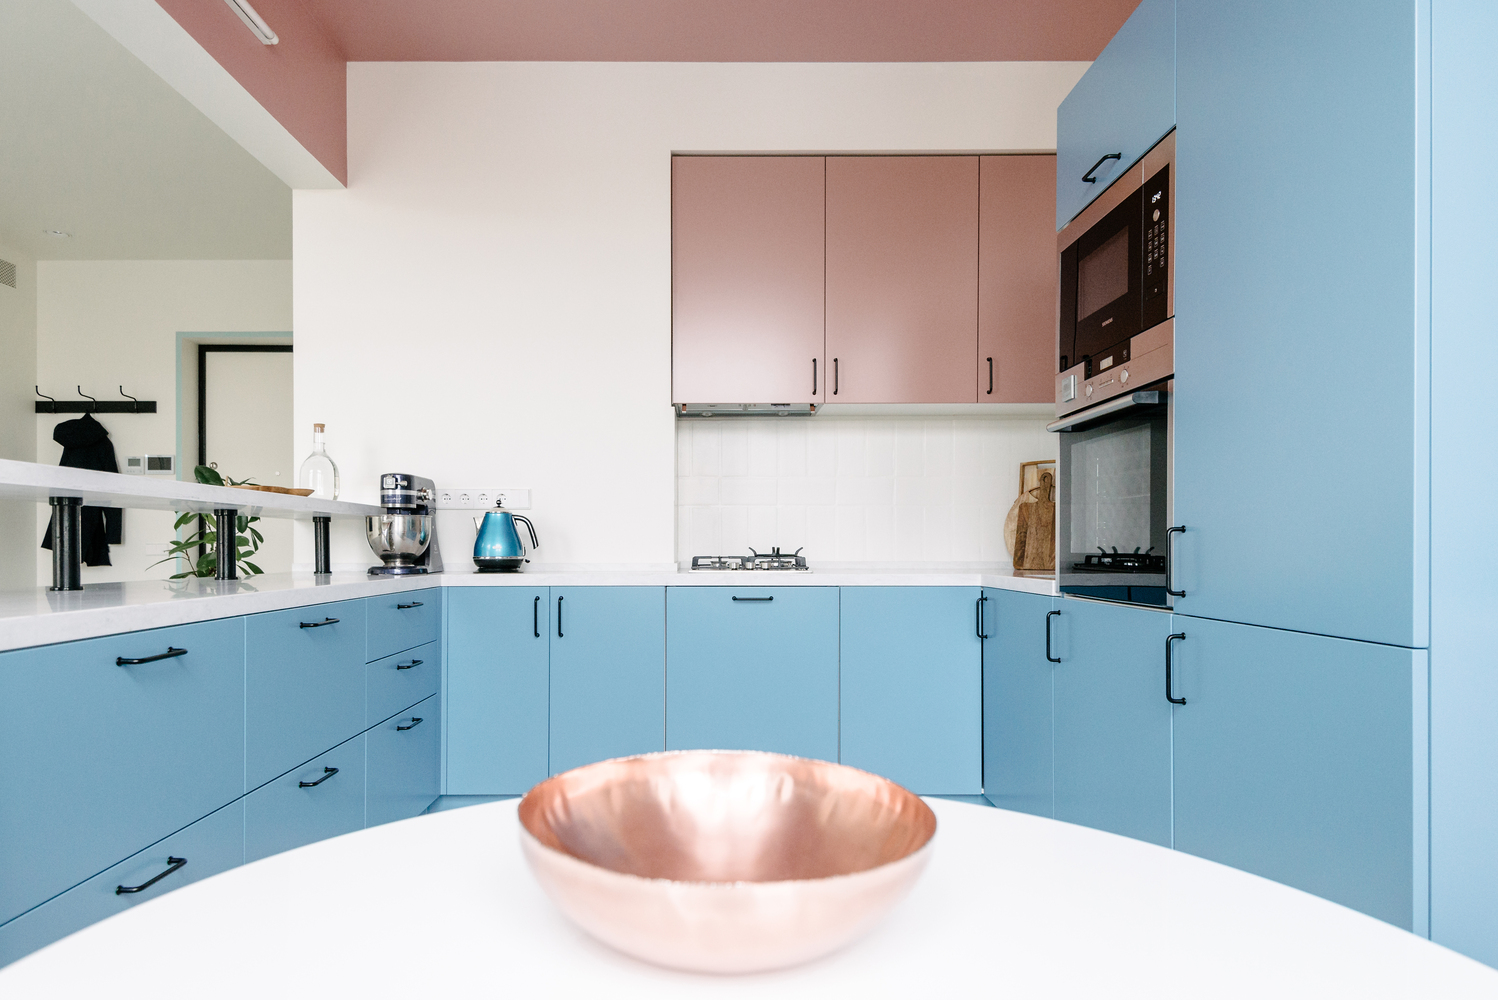 Phòng bếp thiết kế kiểu chữ U với nội thất xếp gọn gàng trong các hộc tủ. Nếu màu xanh lam mang đến sự nhẹ nhàng, mát mẻ cho phòng bếp vốn dễ gây cảm giác nóng nực thì sắc hồng lại tô điểm cho 'trái tim ngôi nhà' nổi bật hơn.